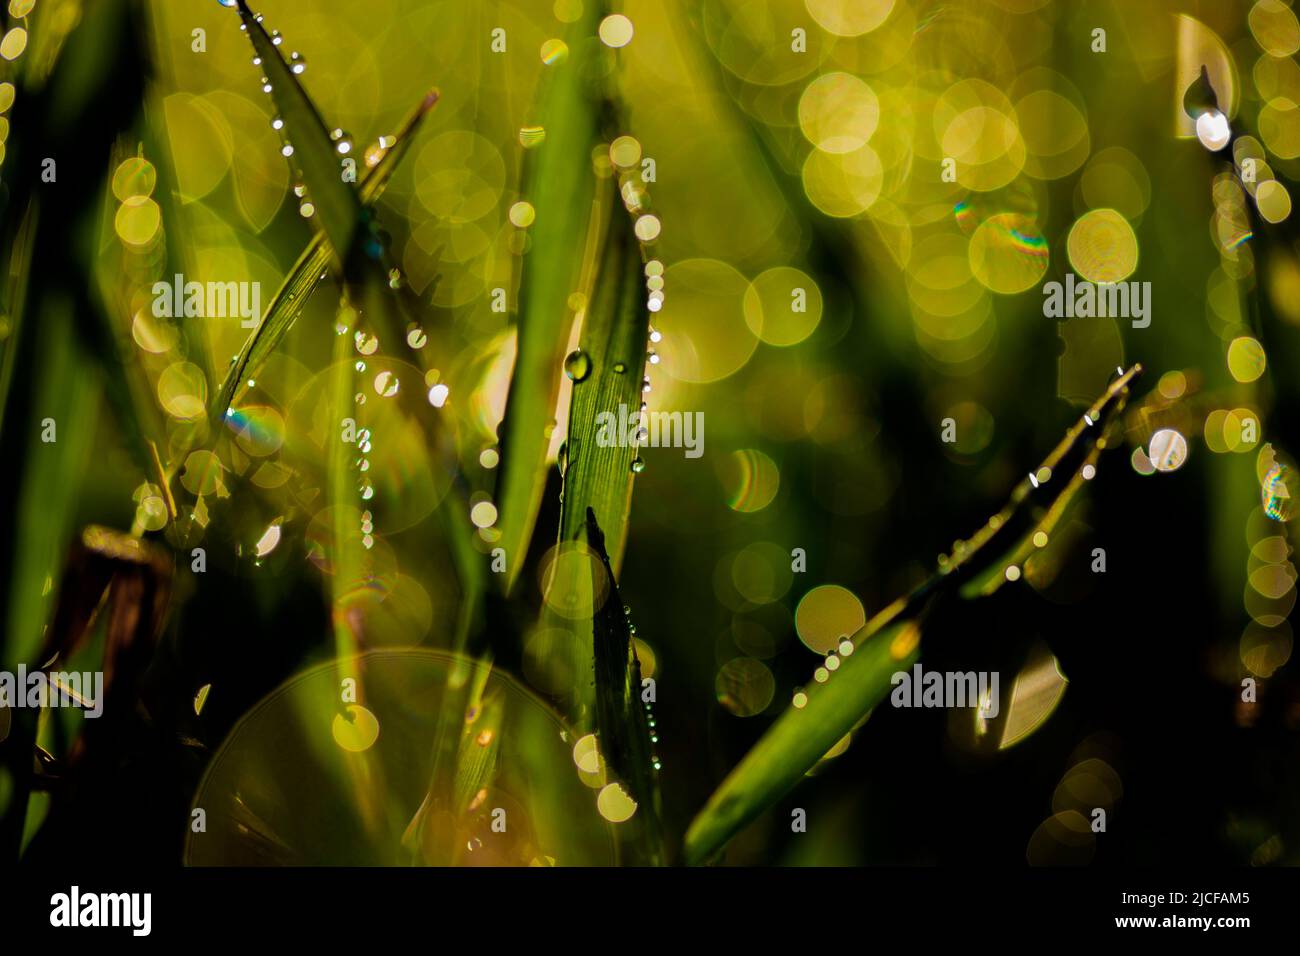 feuilles humides avec gouttes de pluie, profondeur de champ très faible pour de beaux cercles d'ouverture en arrière-plan Banque D'Images